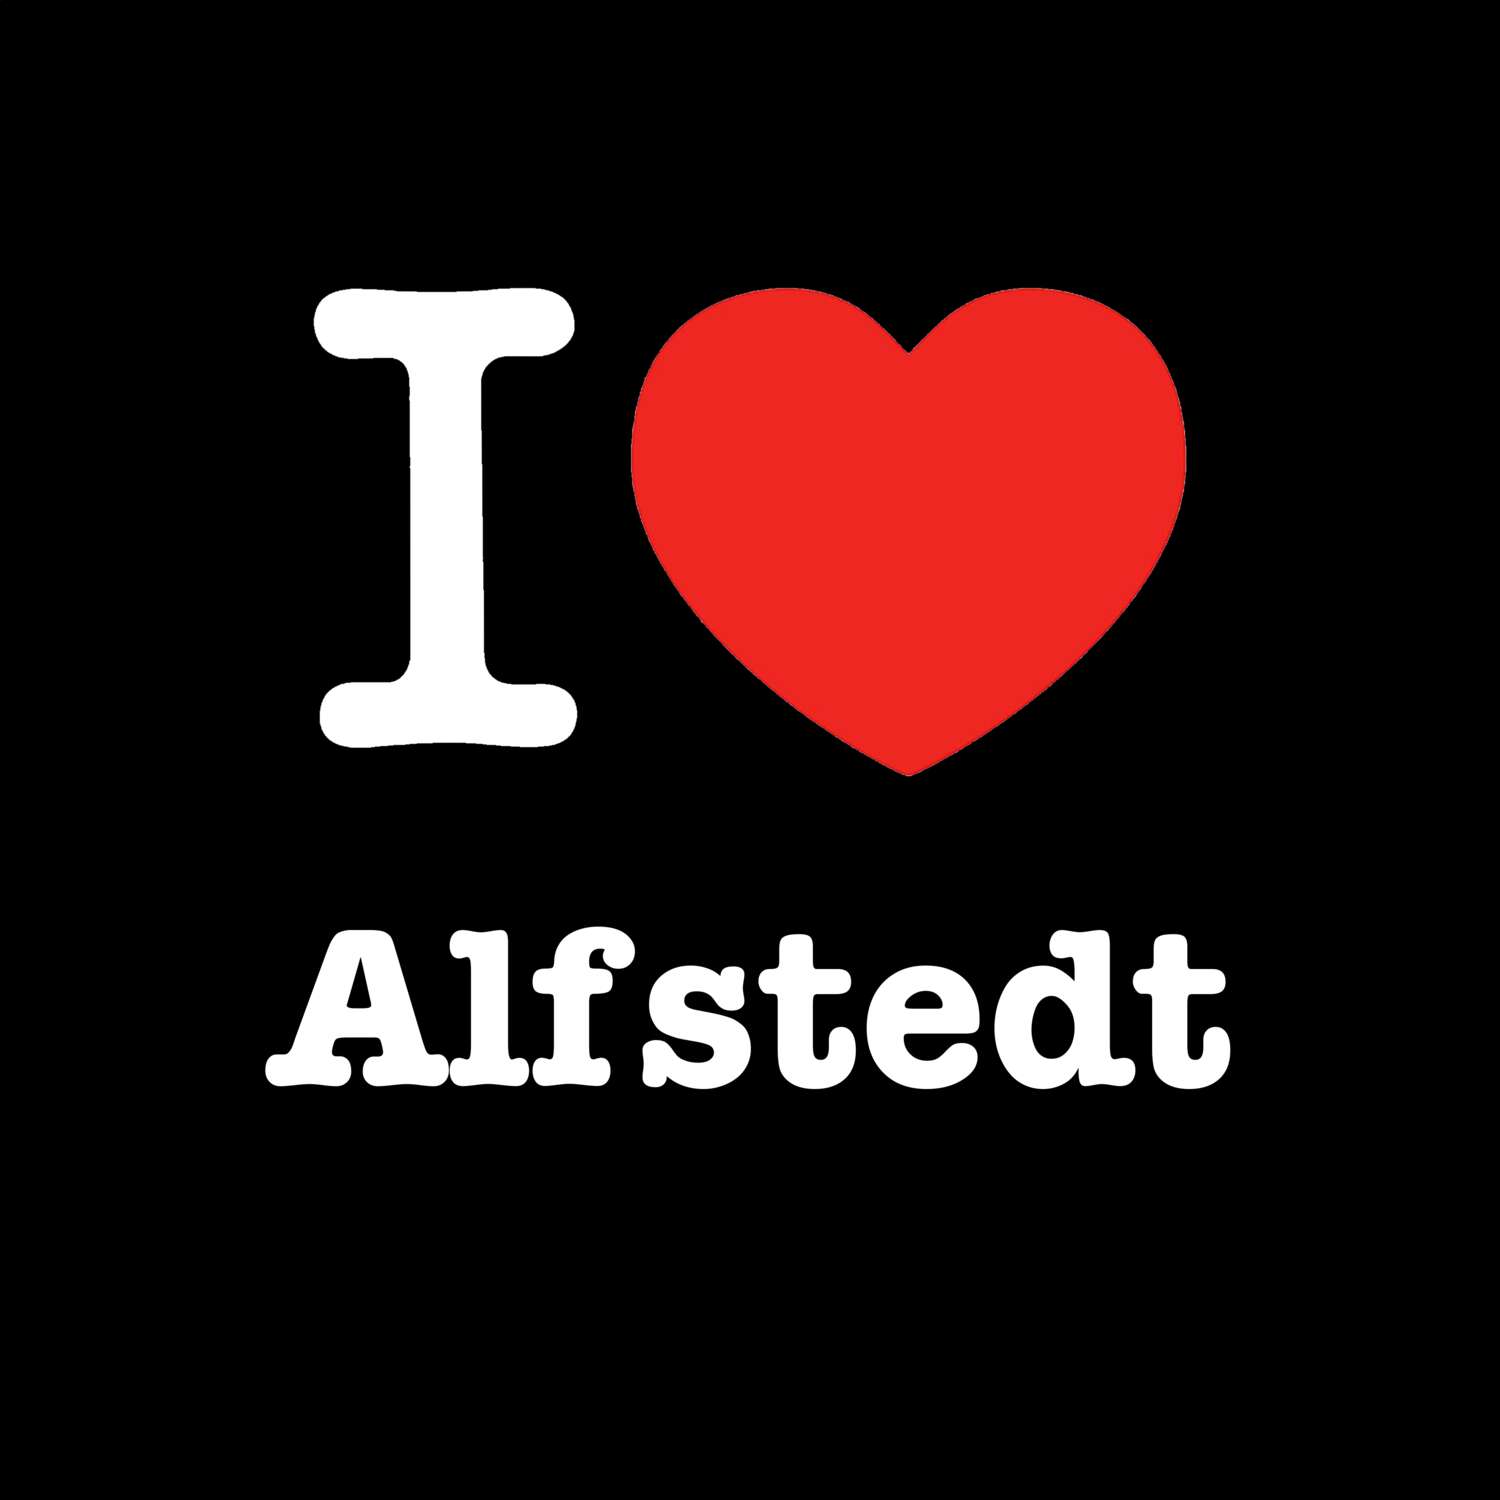 Alfstedt T-Shirt »I love«